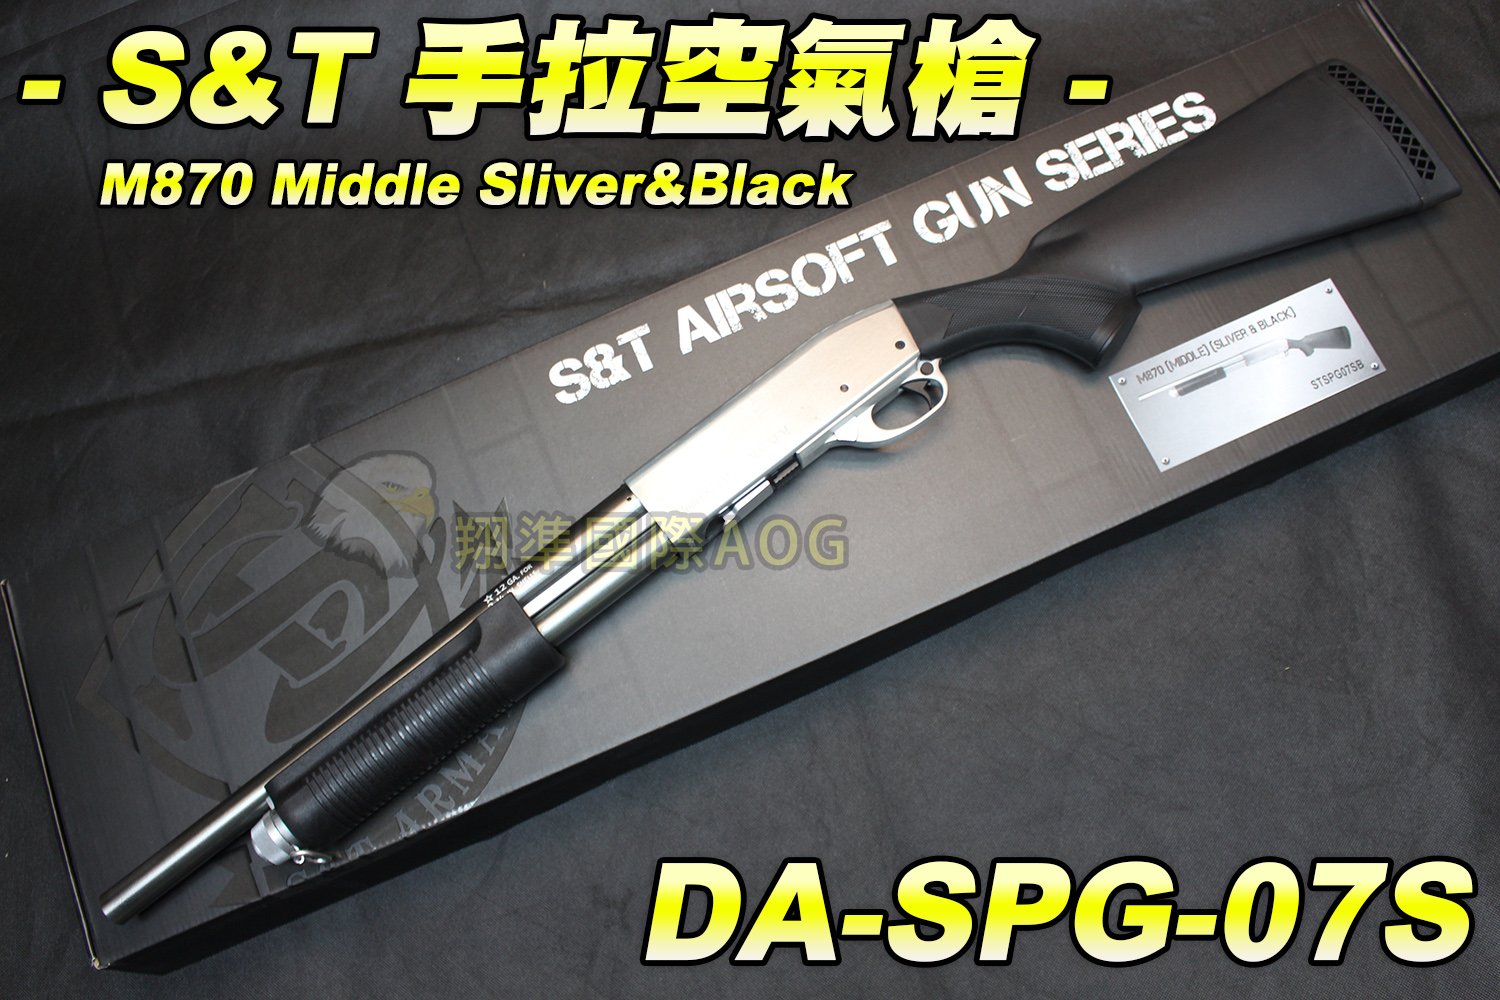 翔準國際AOG】S&T 手拉空氣槍(銀黑) M870 Middle Sliver&Black 散彈槍 